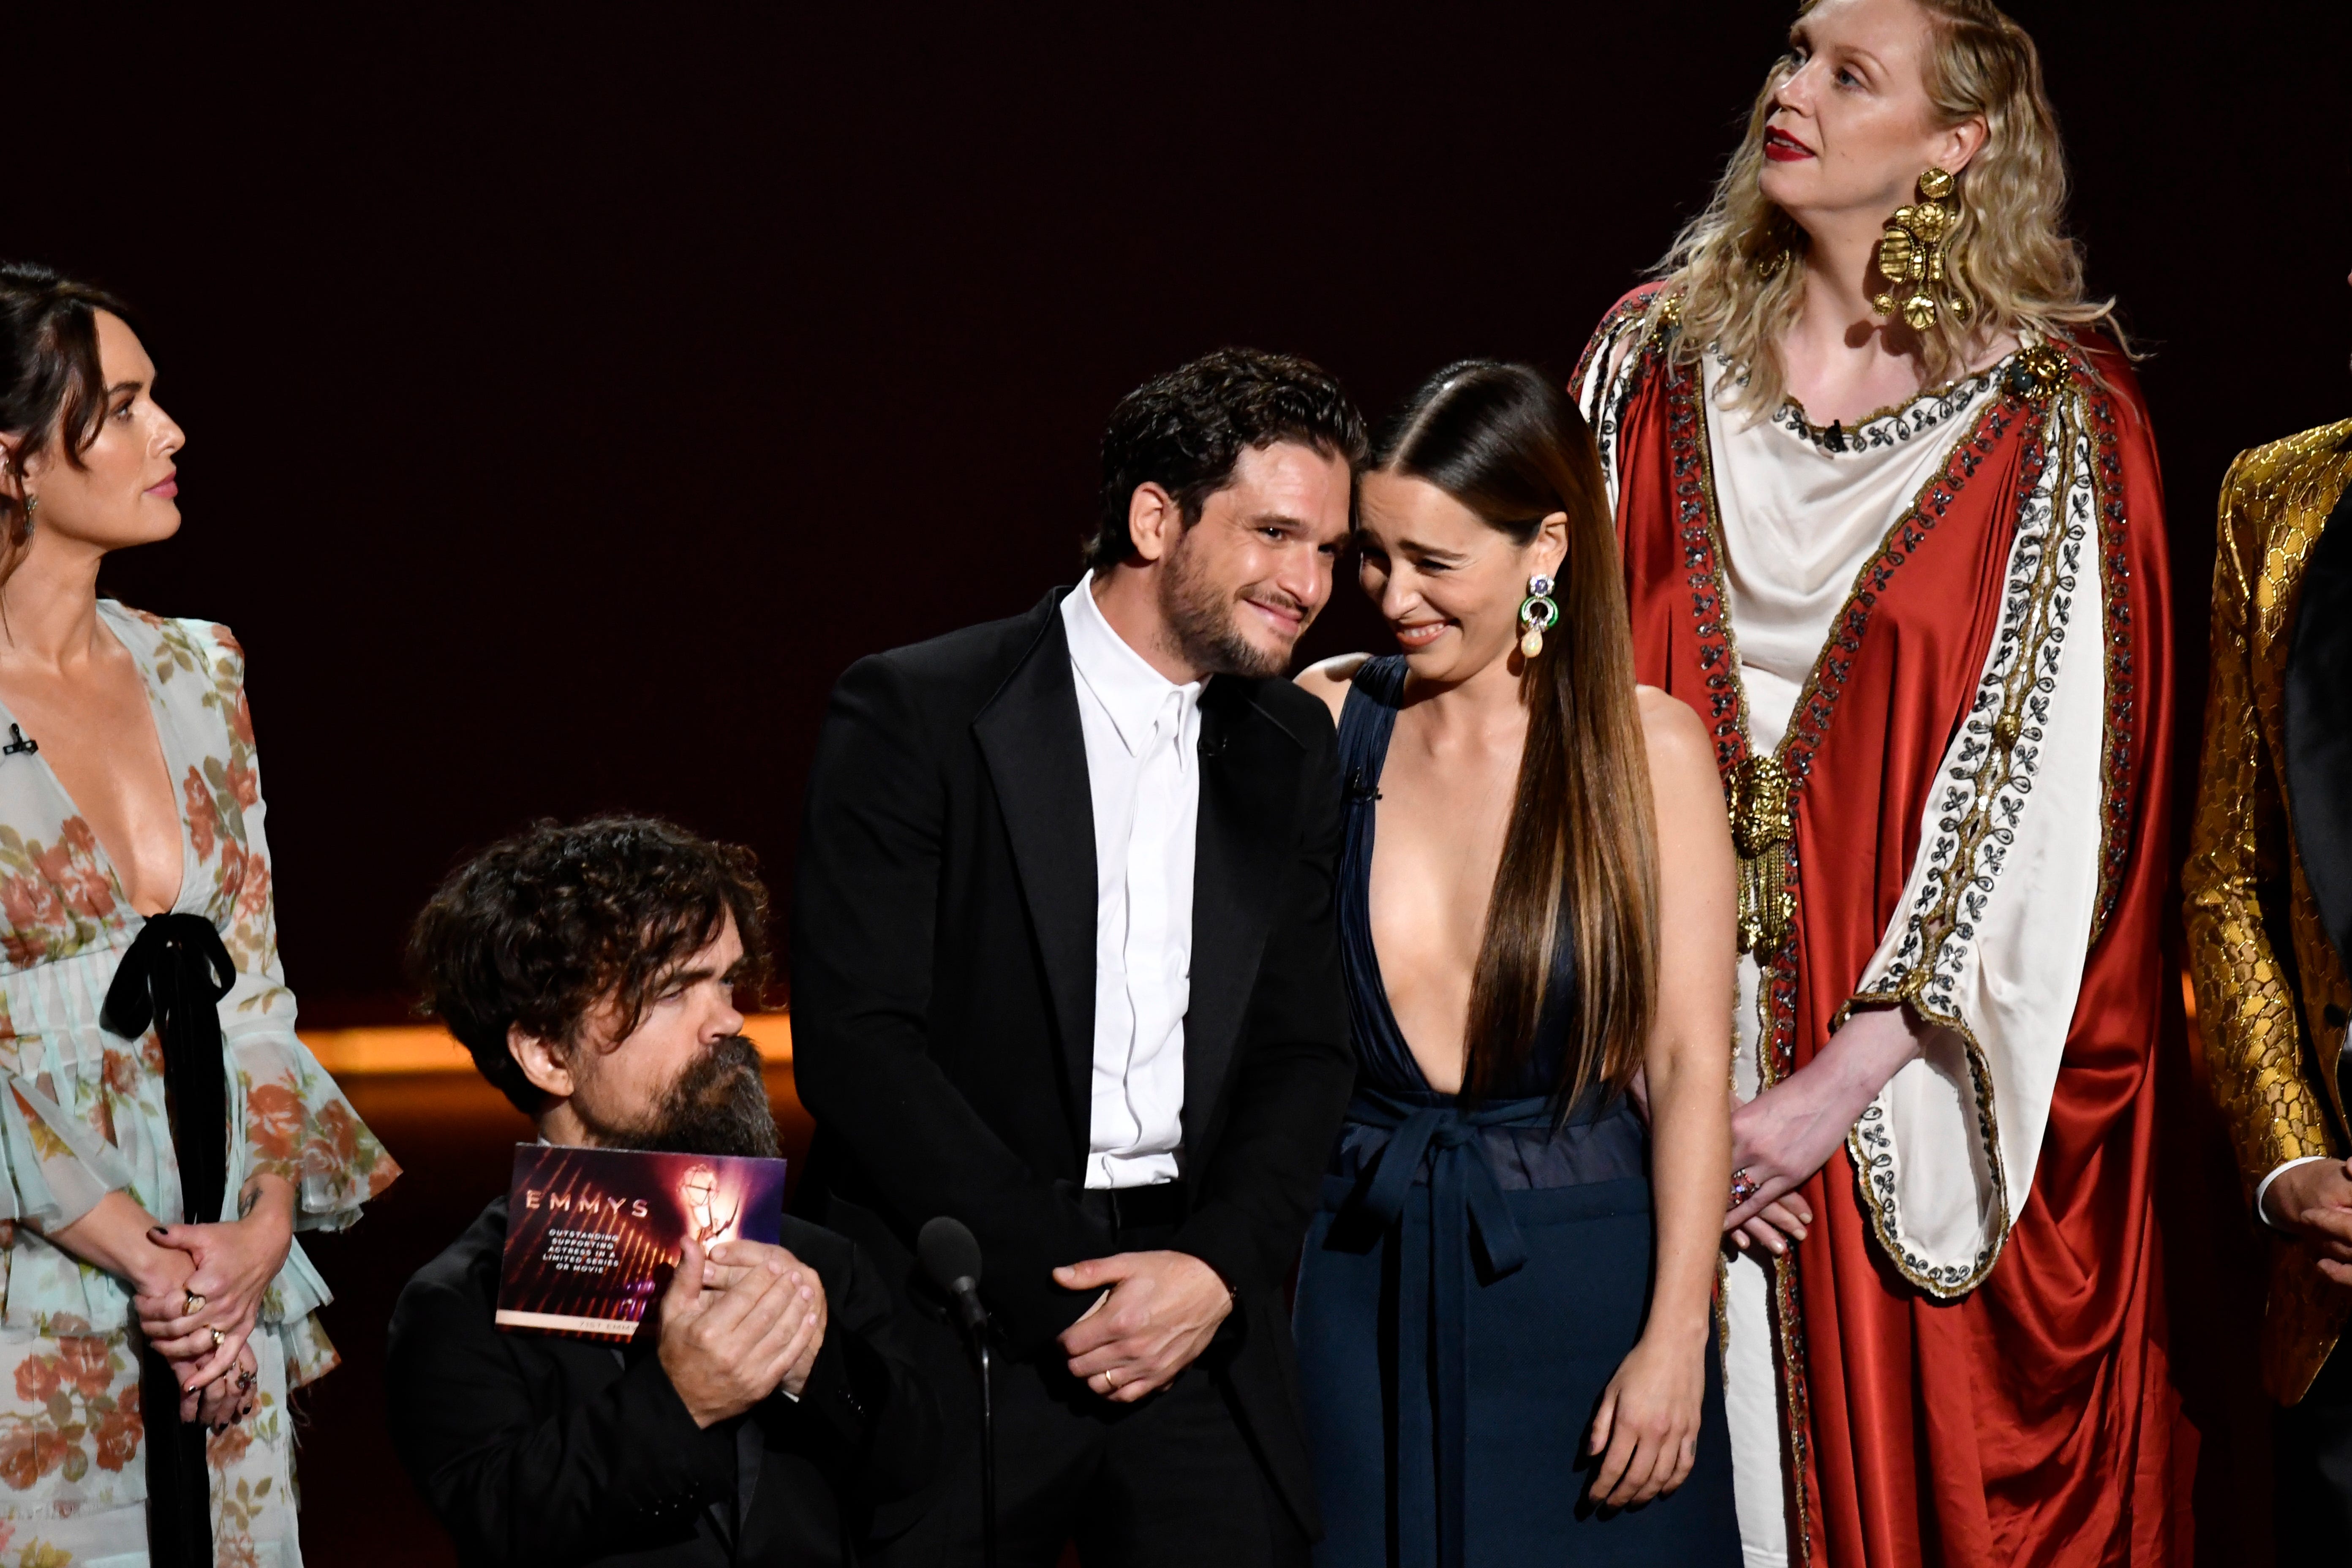 Emmys 2019 Backstage Game Of Thrones Backlash Fleabag Returning